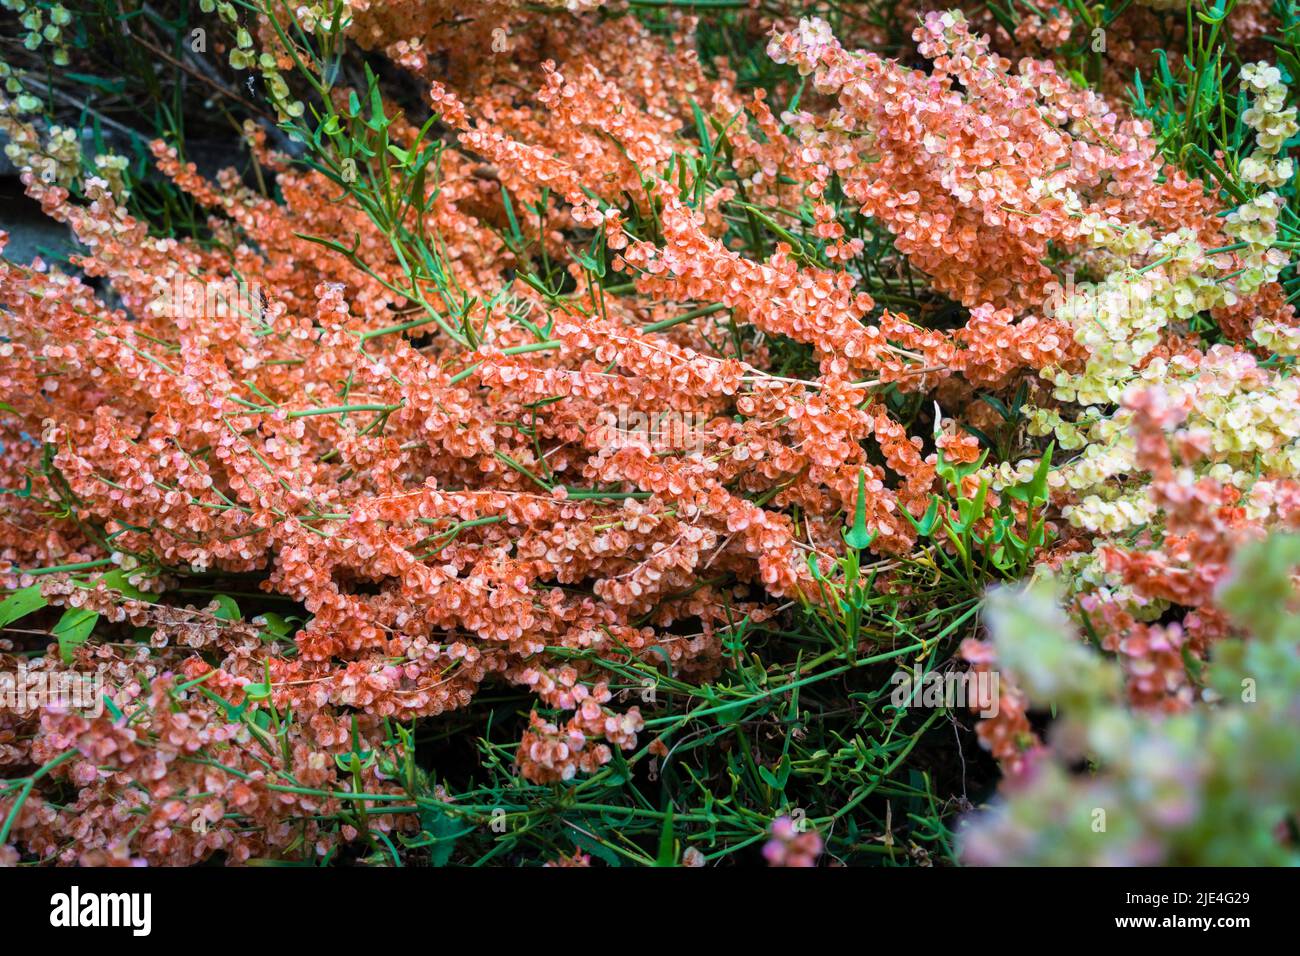 Bella multicolore Selvatica hydrangea fioritura, di solito trovato nella foresta mesica, spesso lungo i ruscelli o in aree rocciose, ma cresce anche in aree più secche. Foto Stock